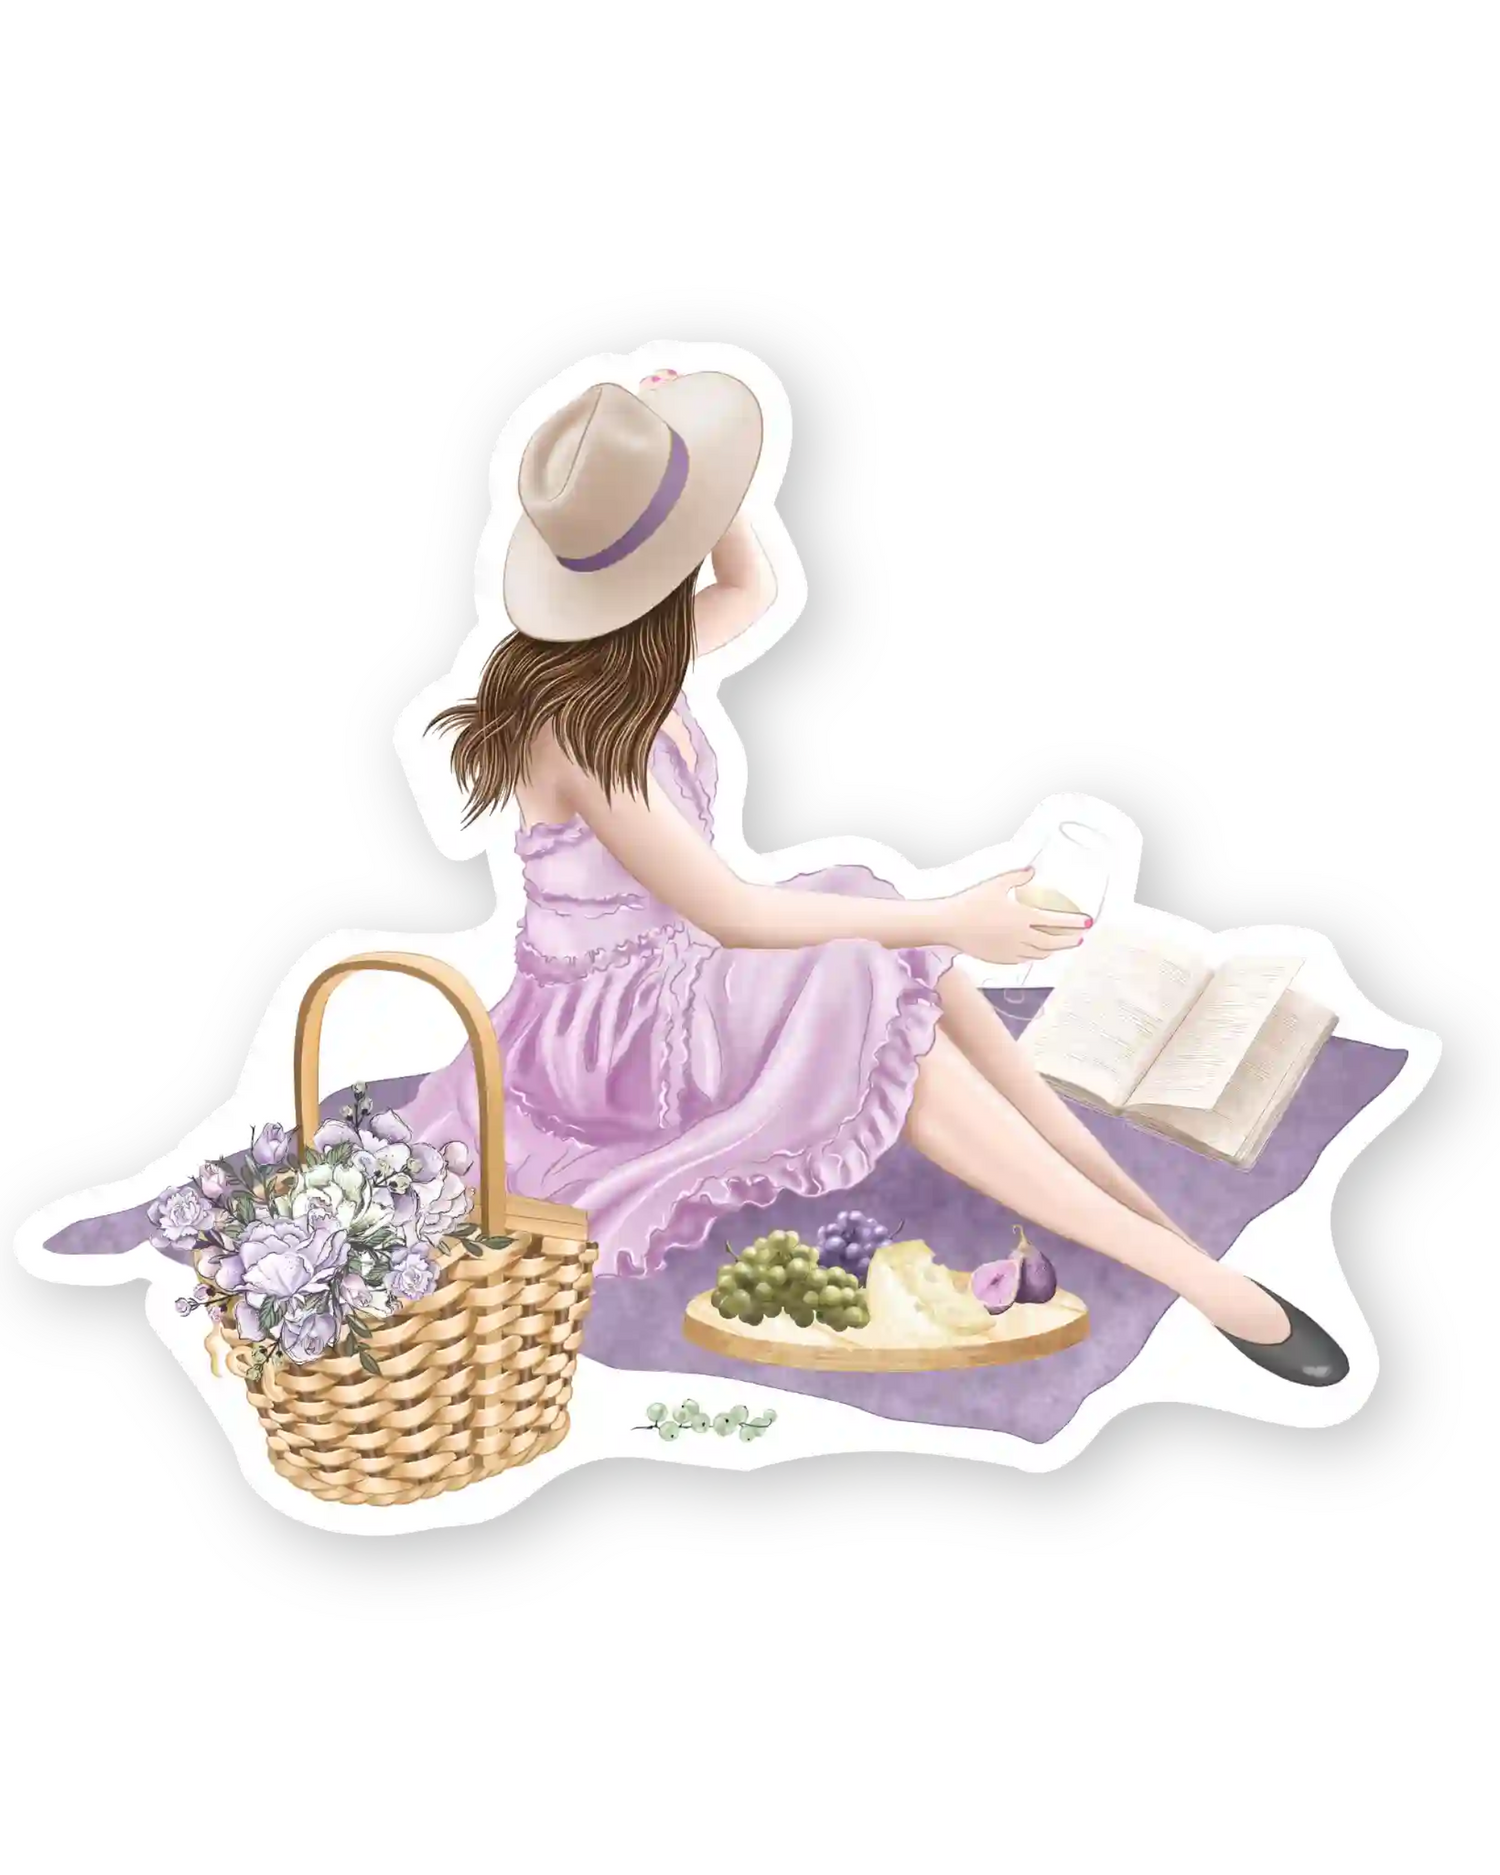 Naljepnice za planer Blankets and Baskets, ilustracije detalj djevojka sjedi na piknik dekici pored košare s cvijećem i voćem na pladnju